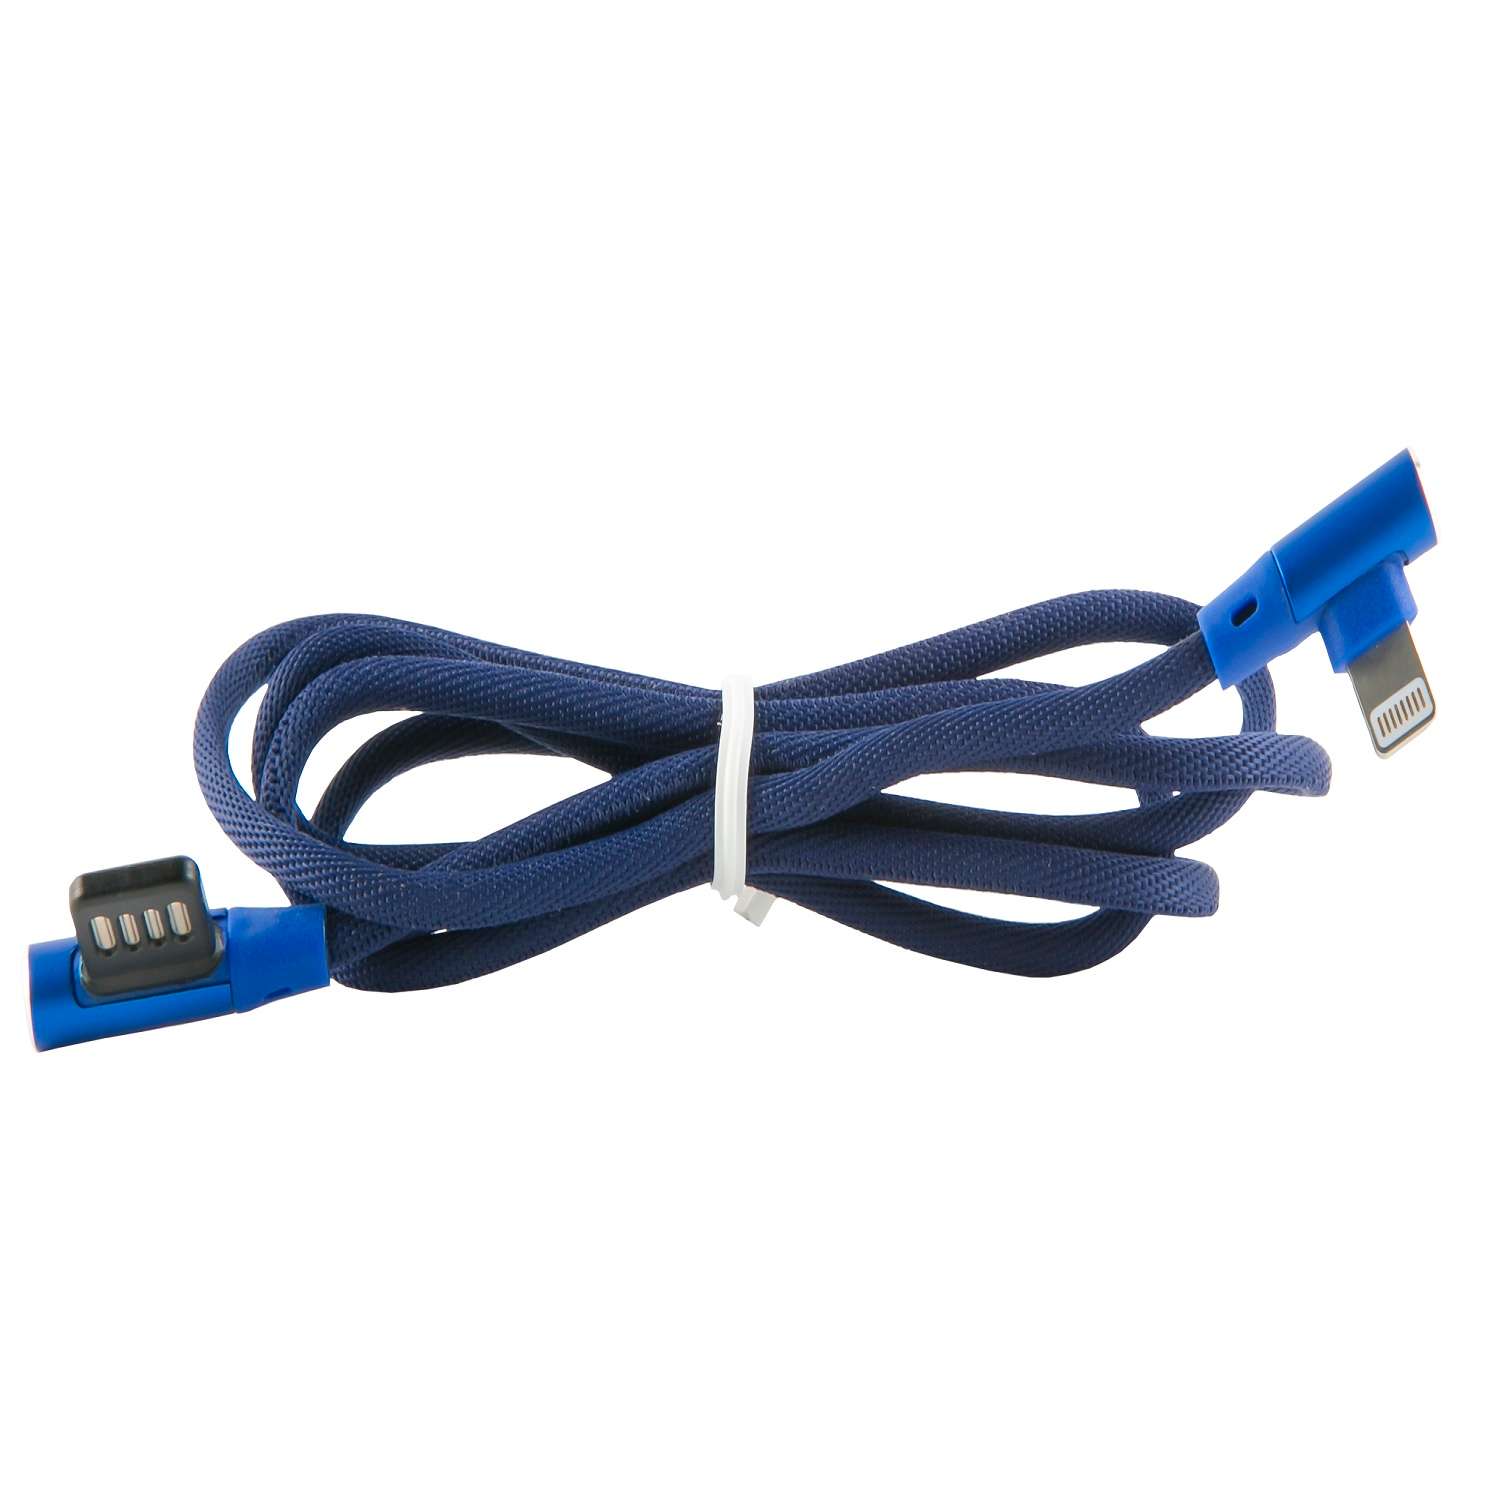 Кабель red line. Кабель Red line Fit USB. Red line кабель fishnet синий. Кабель интерфейсный Red line Fit USB-Micro USB. Молния голубая РБГ.